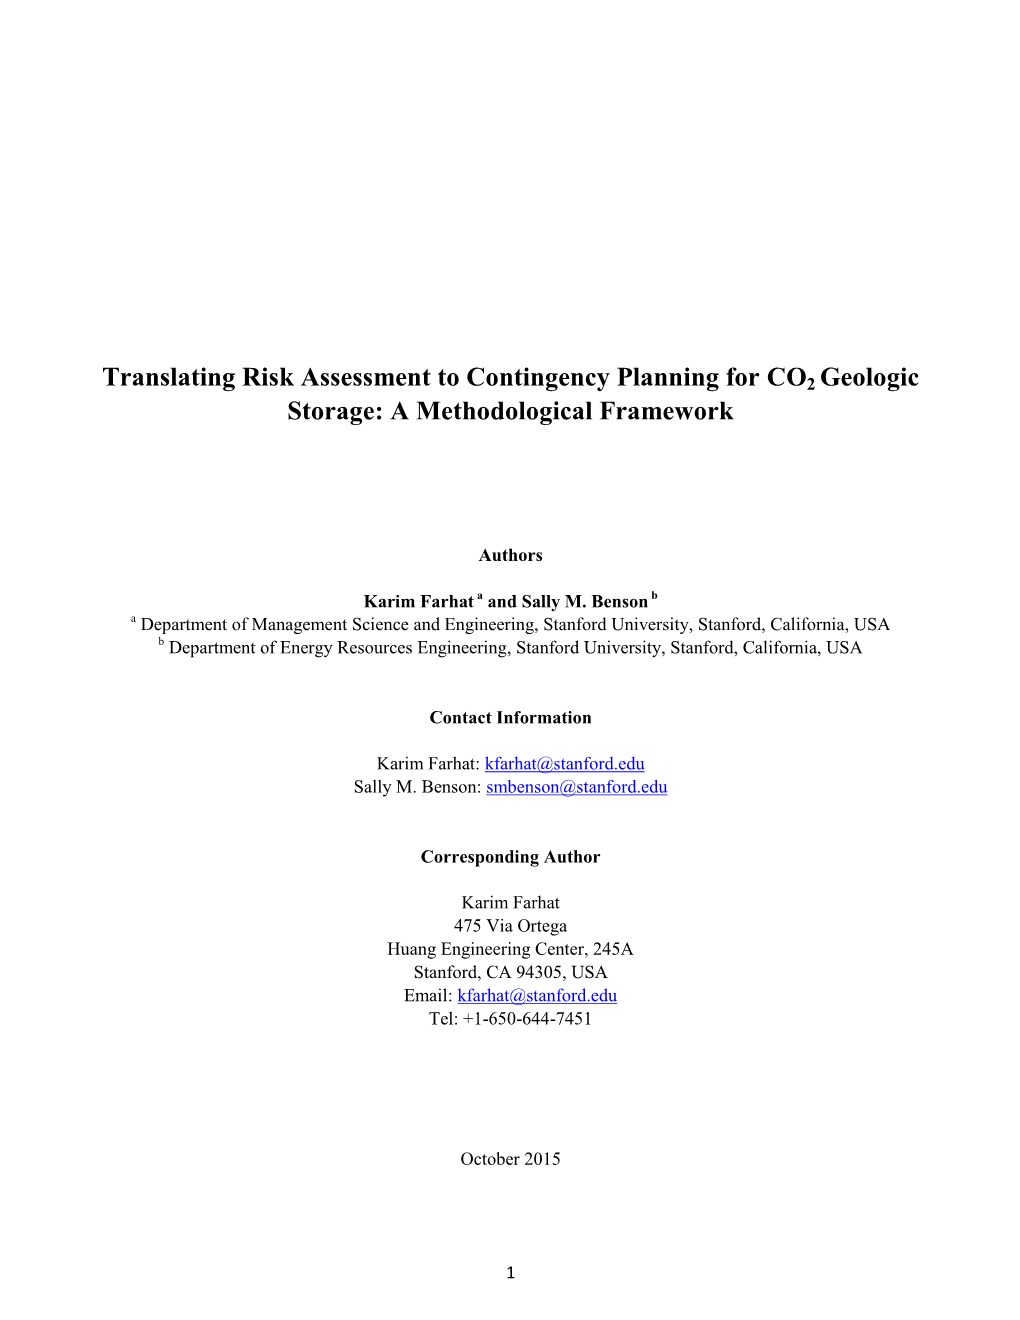 Translating Risk Assessment to Contingency Planning for CO2 Geologic Storage: a Methodological Framework